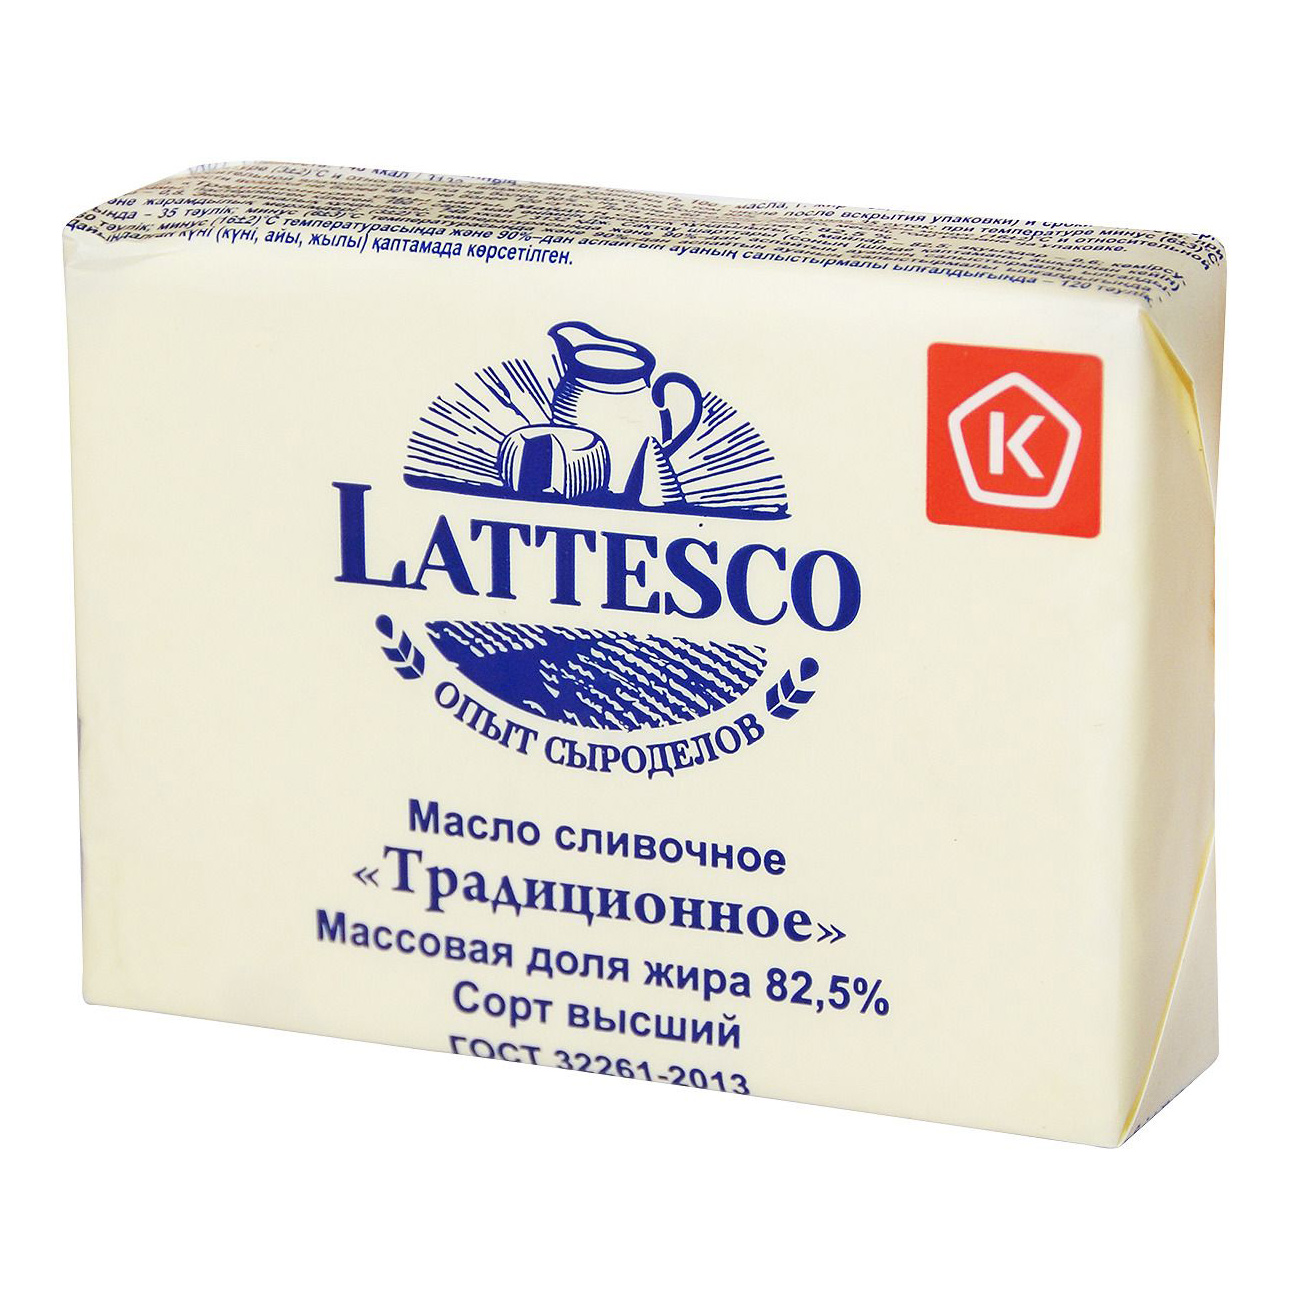 Масло Lattesco сливочное Традиционное 82,5% 180 г